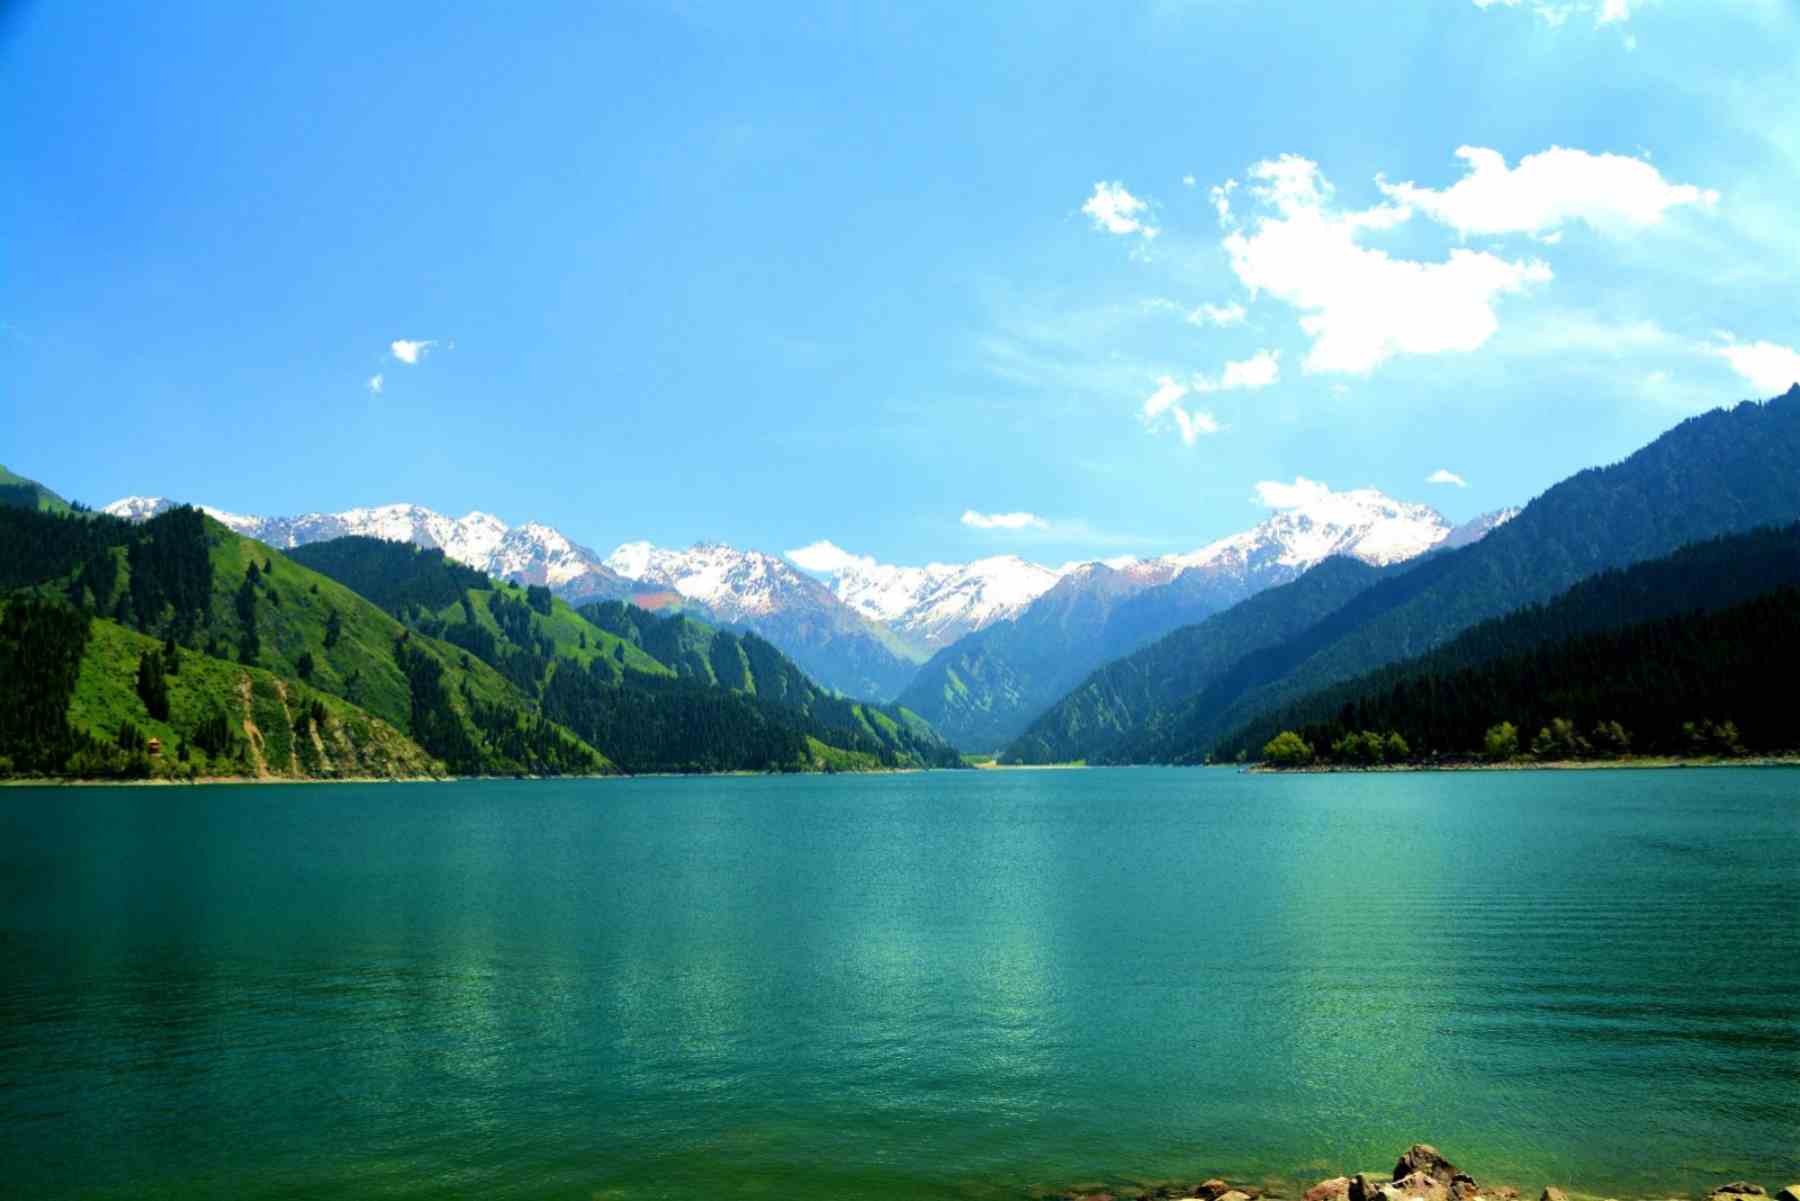 Heavenly Lake